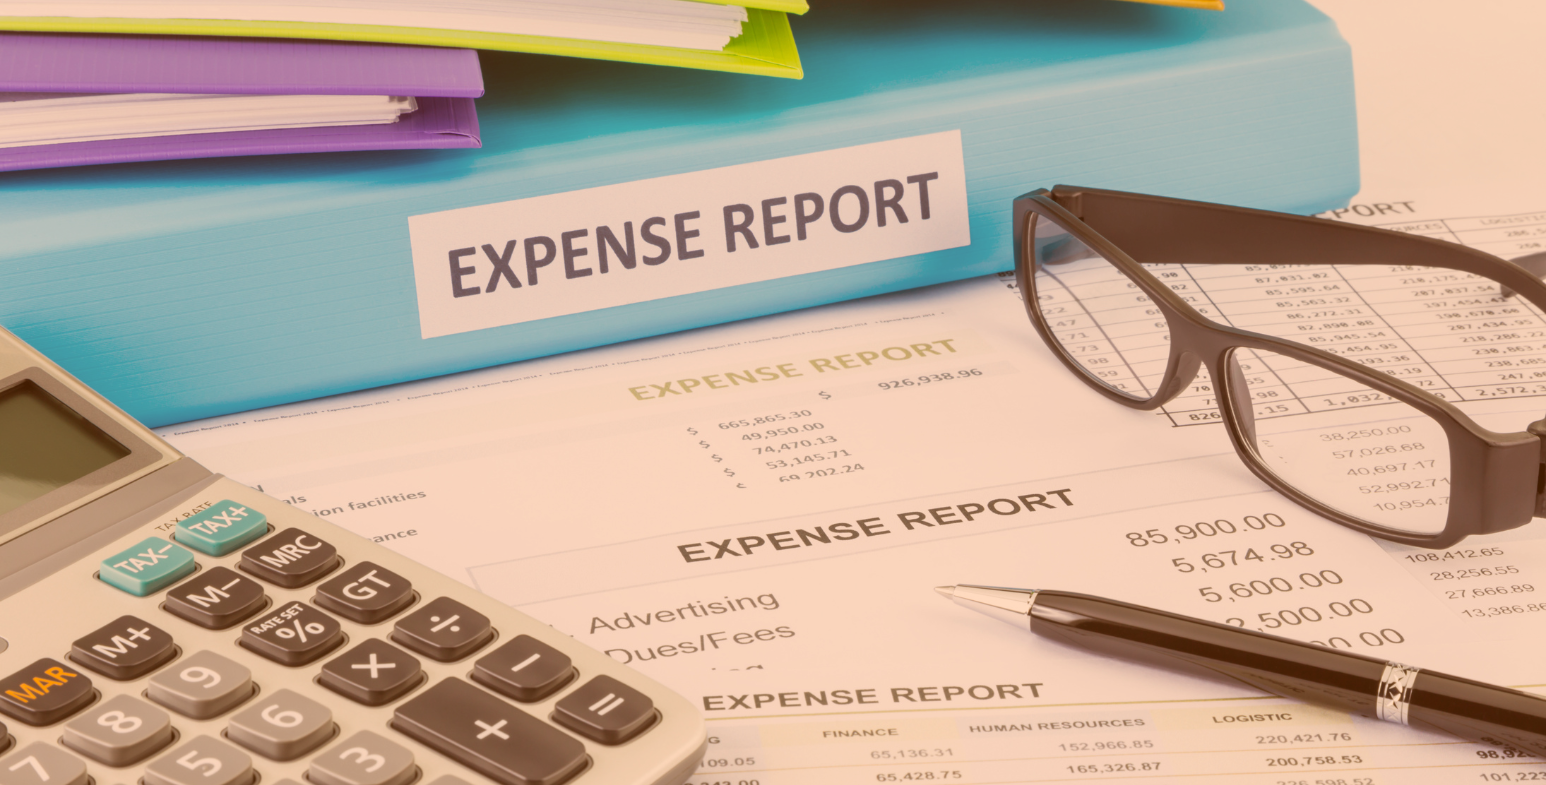 Raport wydatków, okulary oraz kalkulator leżące na dokumentach.